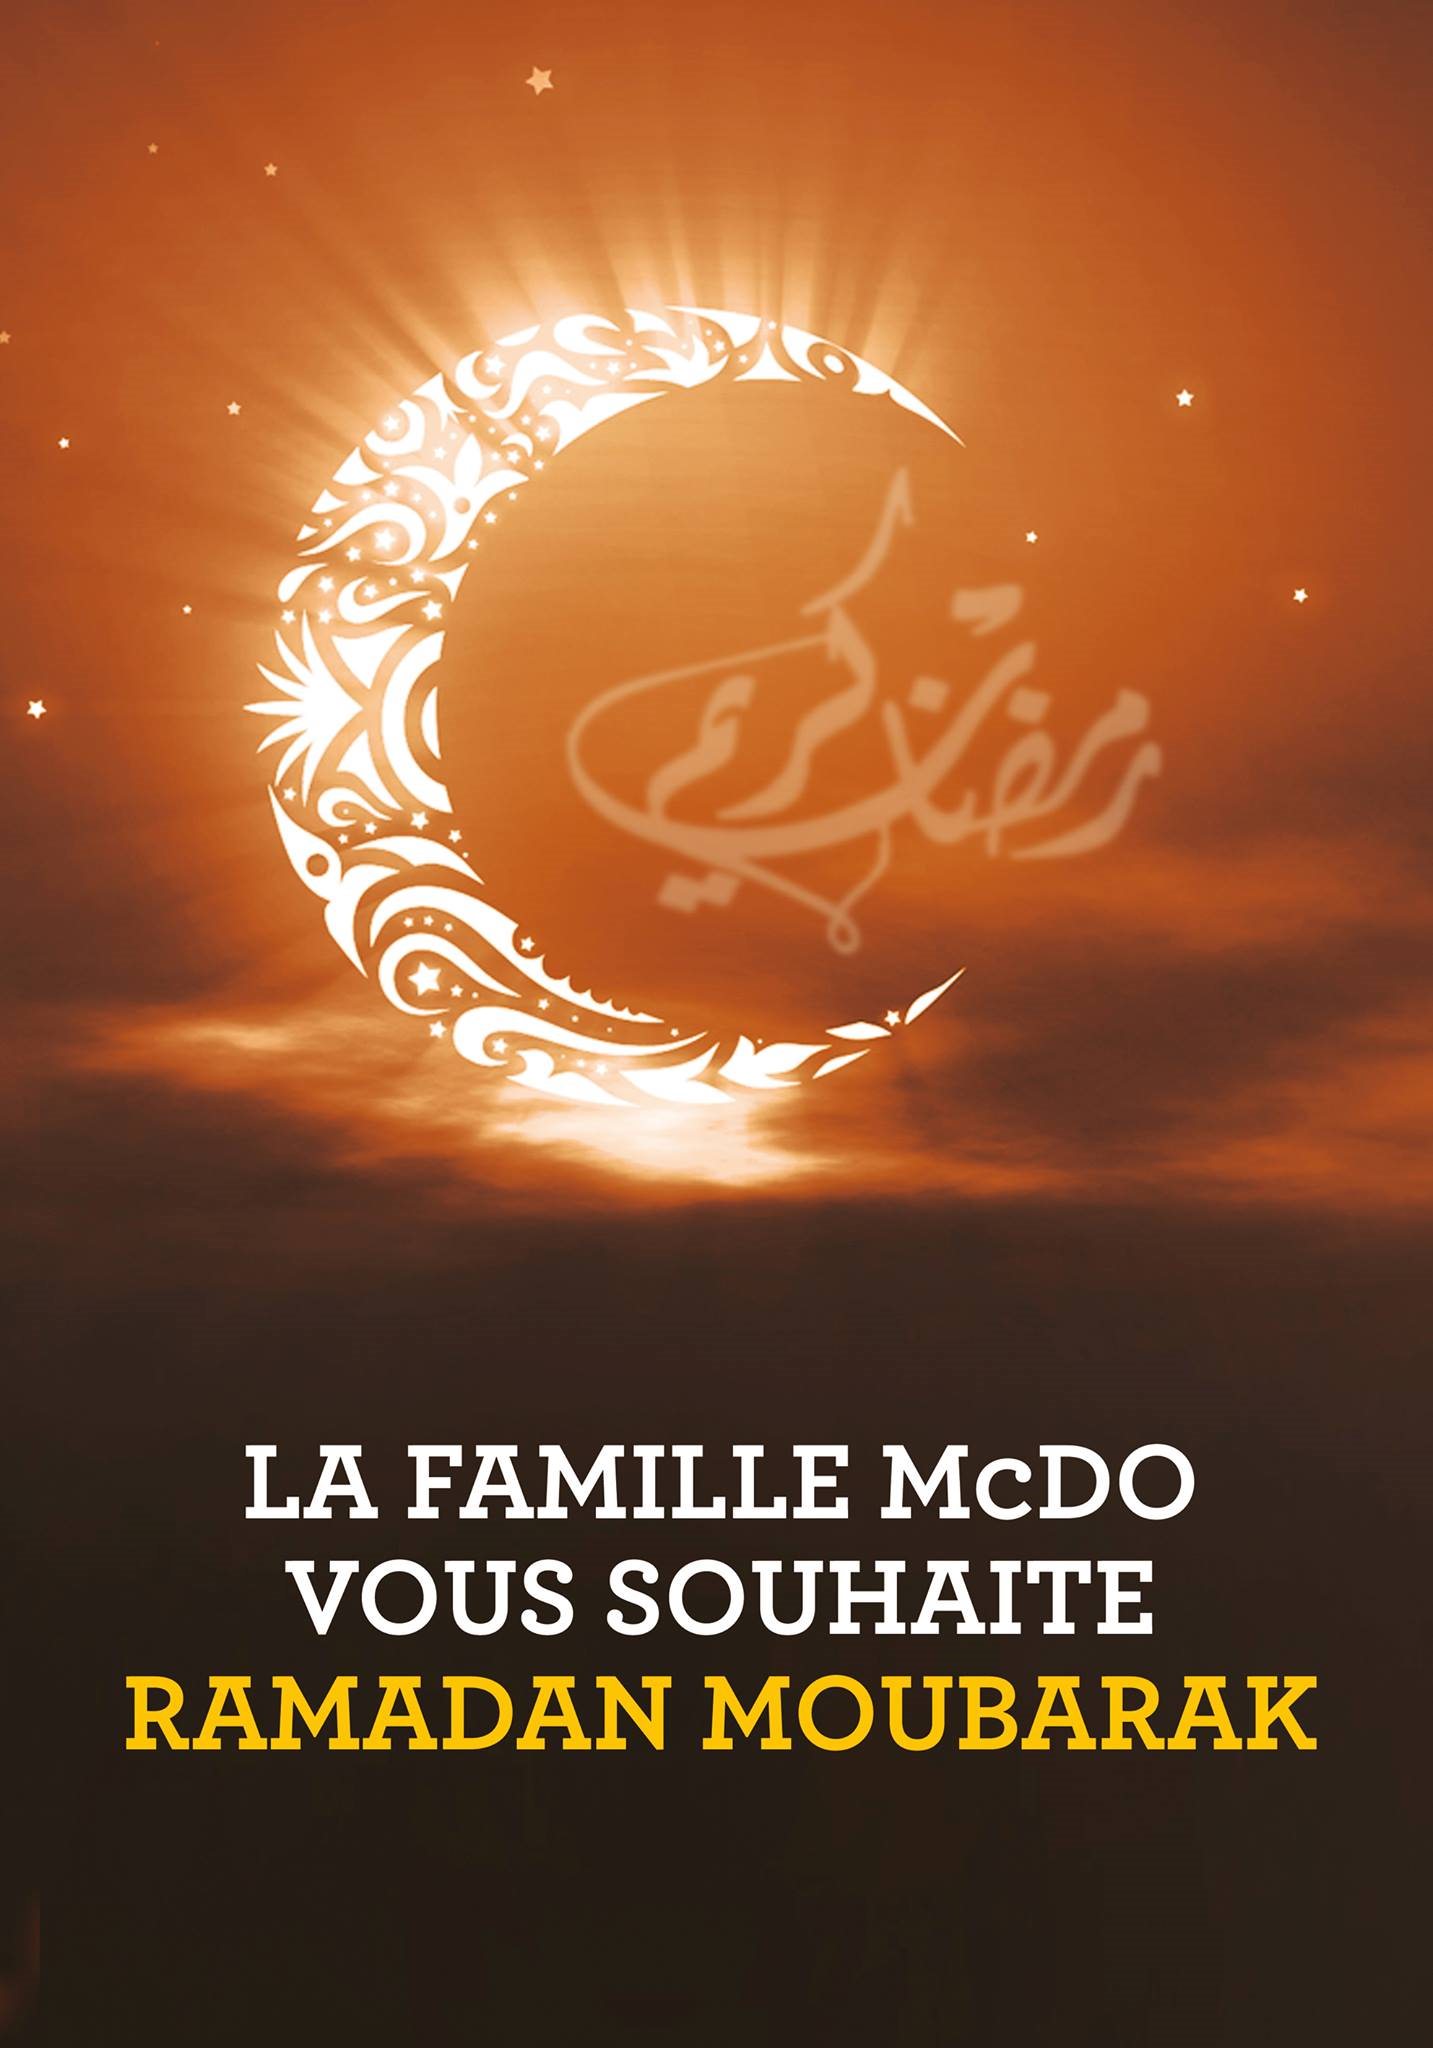 Поздравляю с окончанием месяца рамадан. Рамадан. Месяц Рамадан. С великим месяцем Рамадан. Со священным праздником Рамадан.